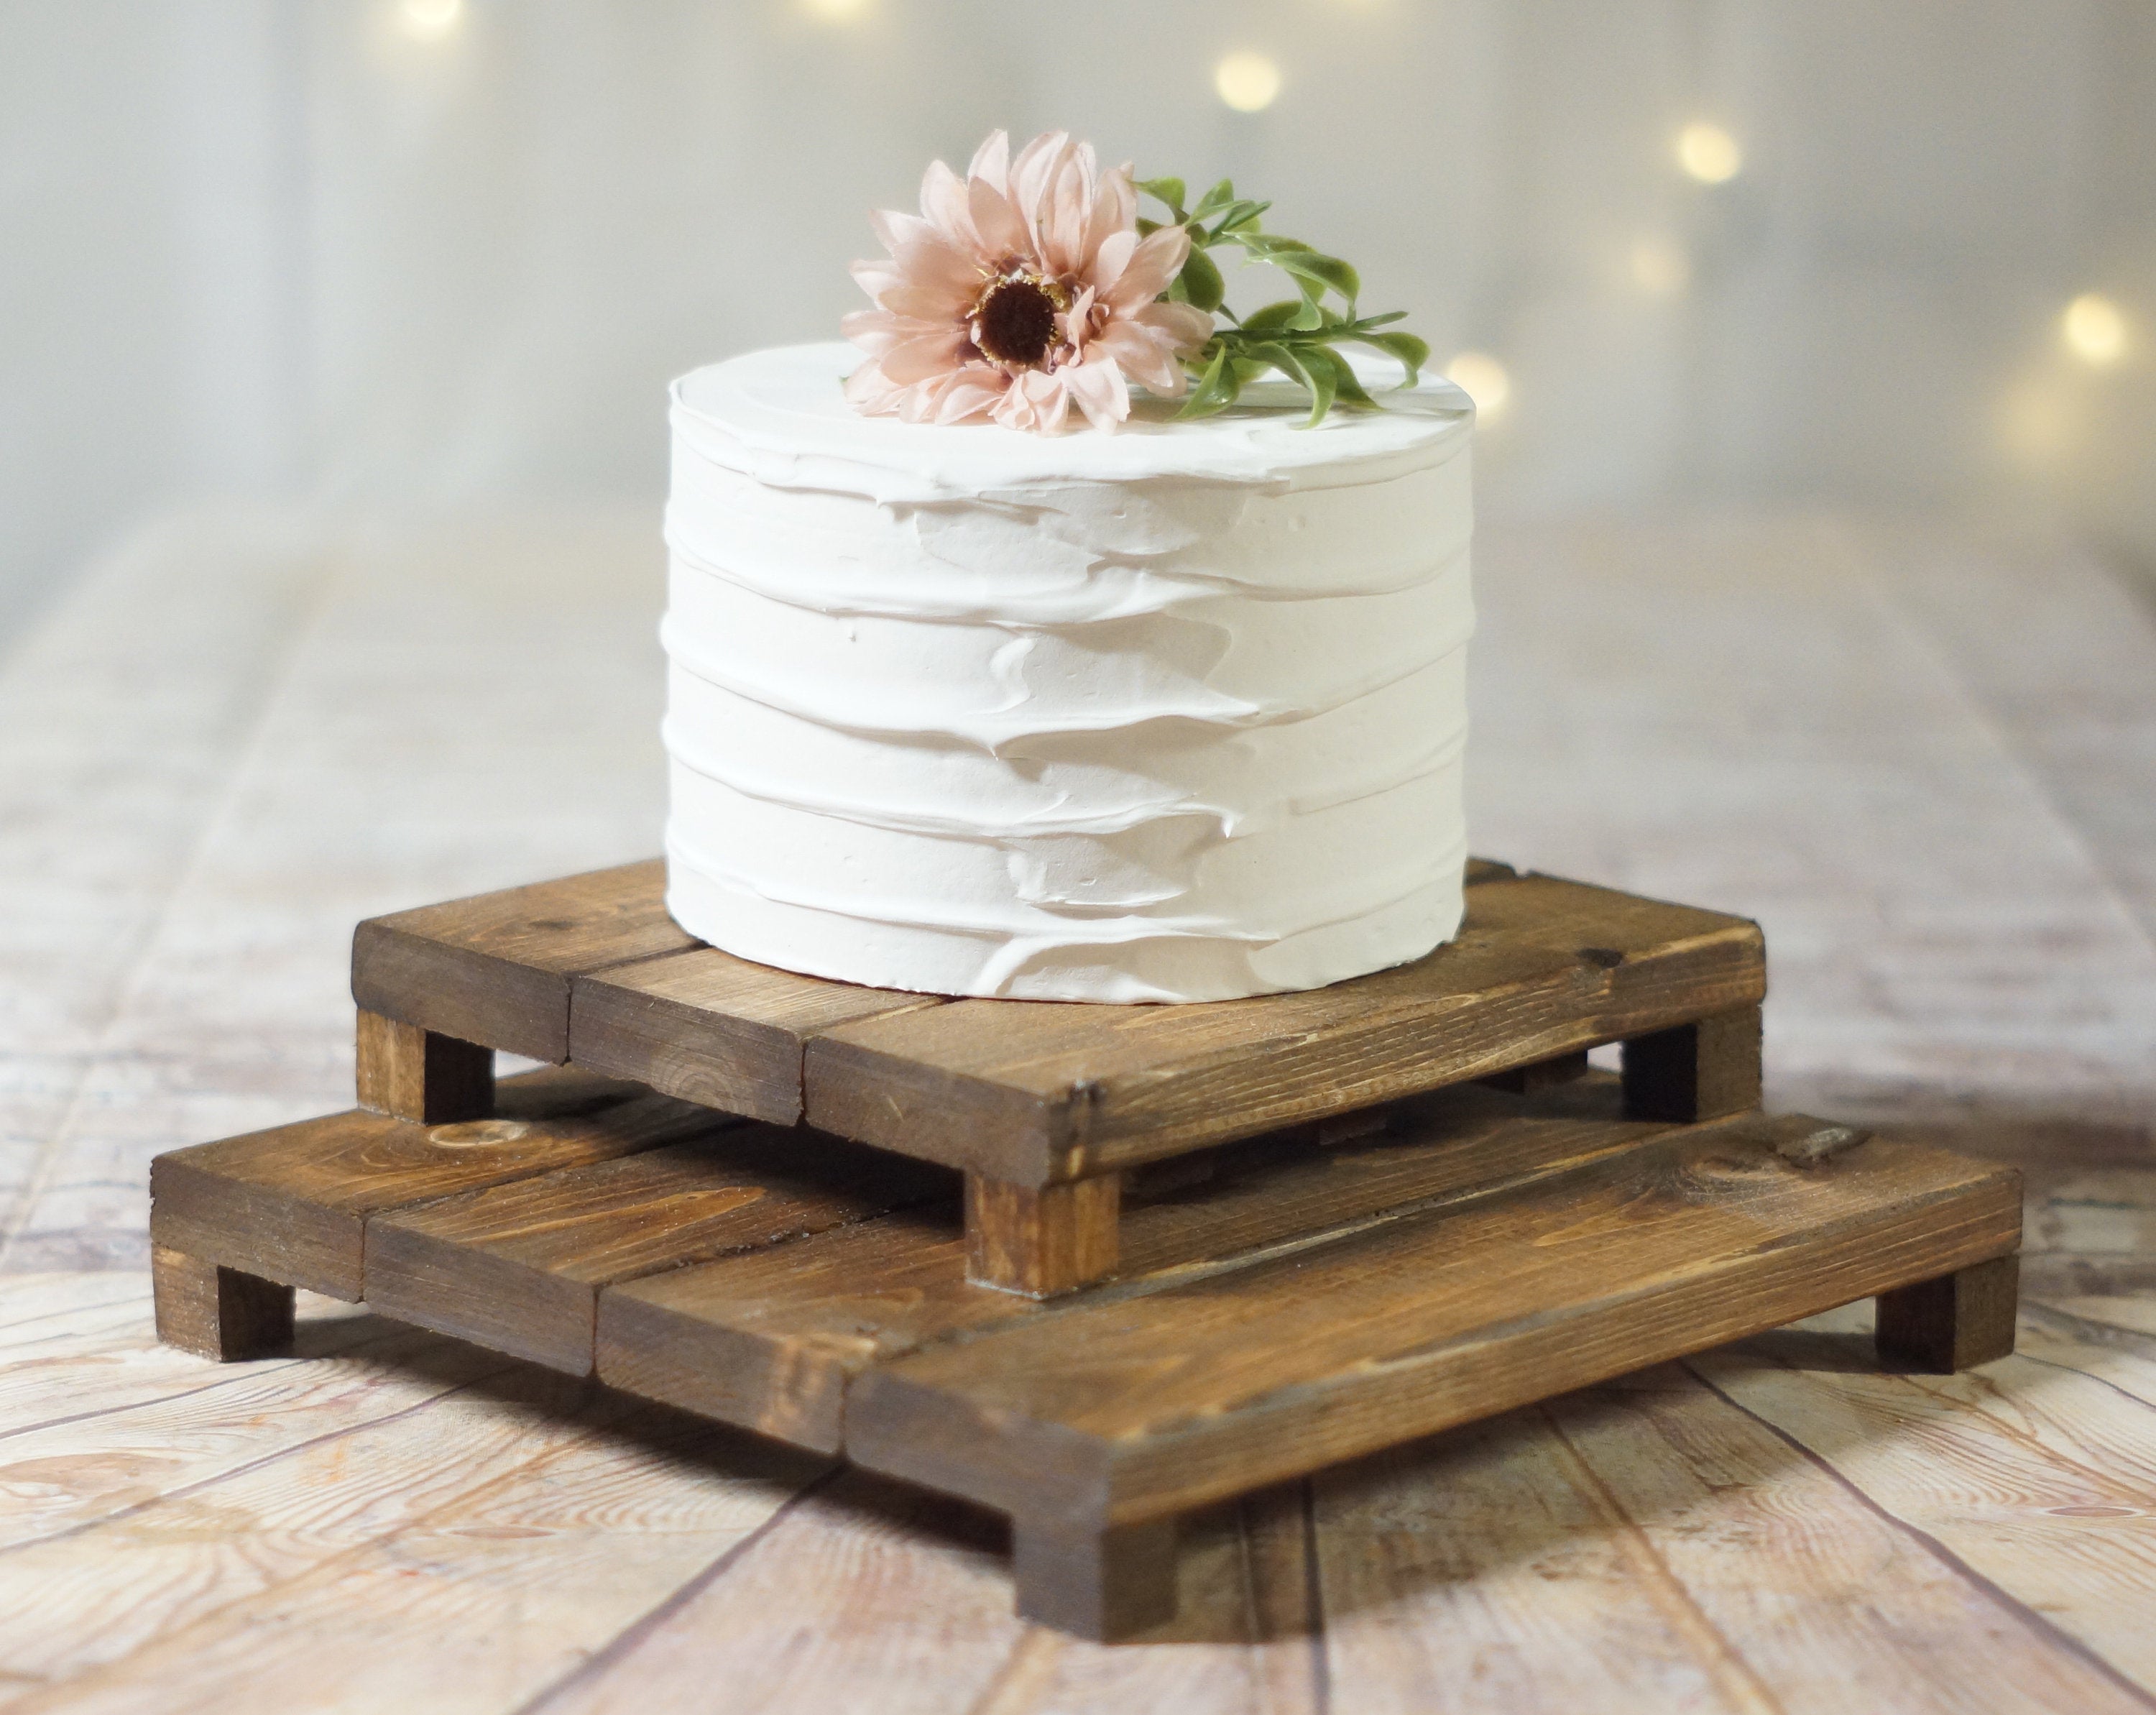 Faux DIY Wood Slice Cake Stand | Make It Fun Blog